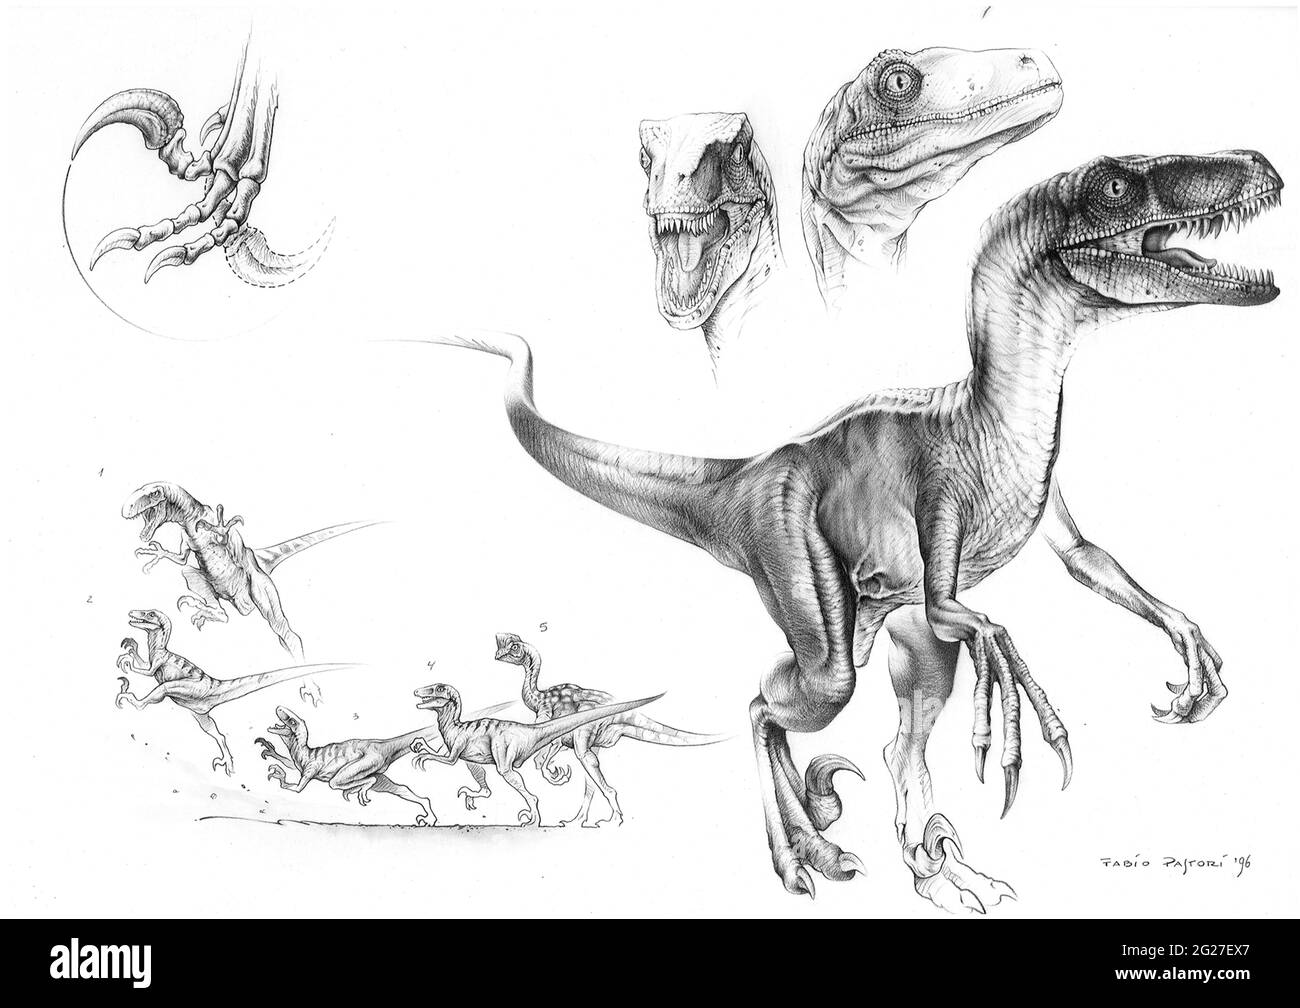 velociraptor black and white stock photos images alamy bambino disegno da colorare disegni piante